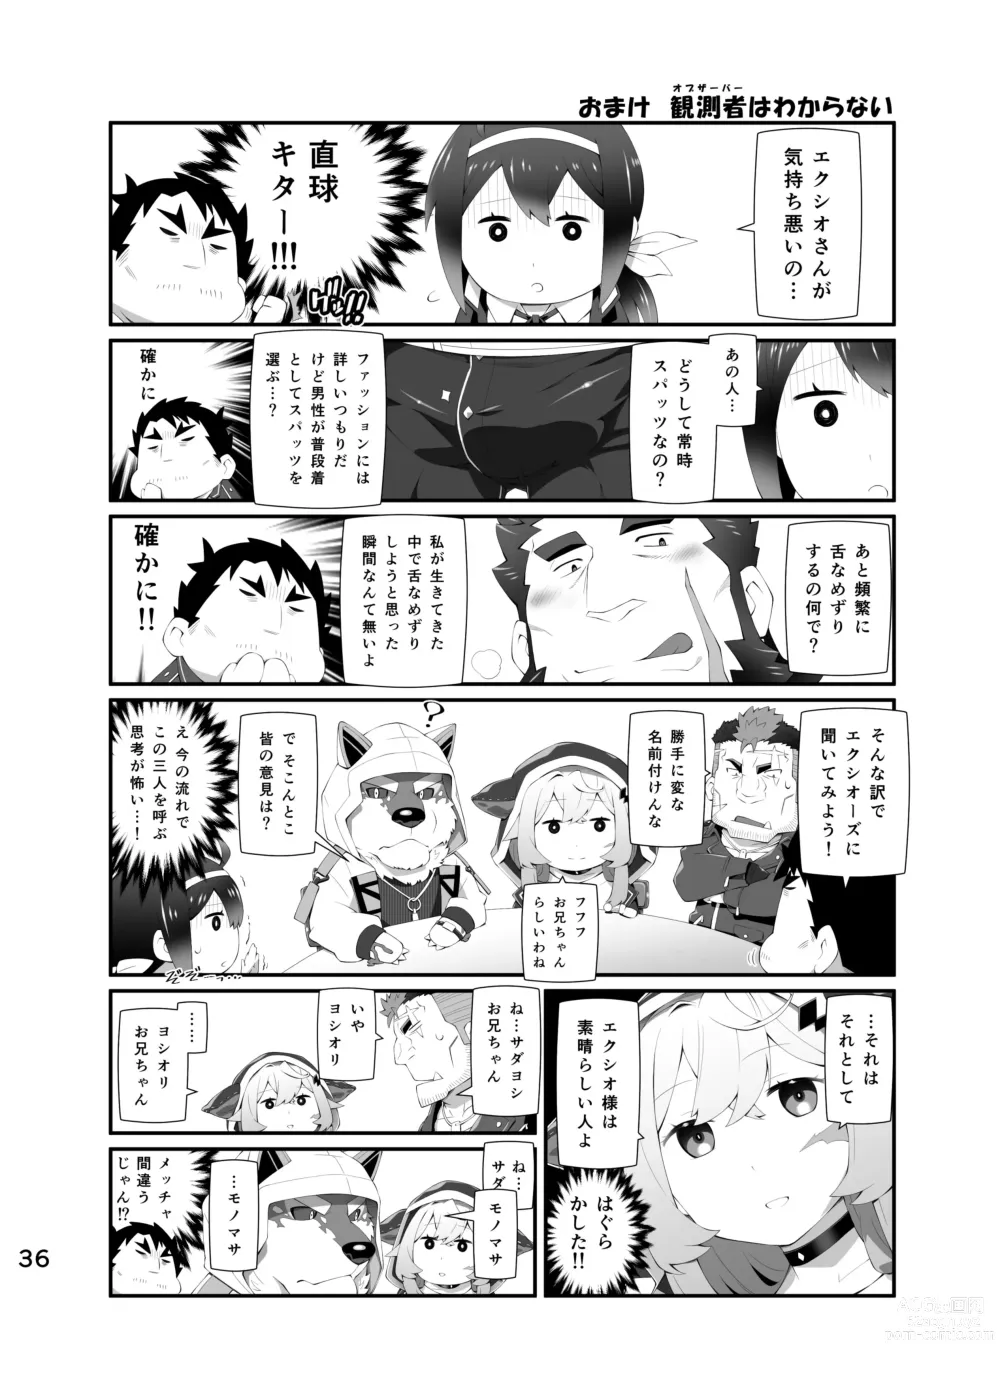 Page 35 of doujinshi LIVE AH ERO